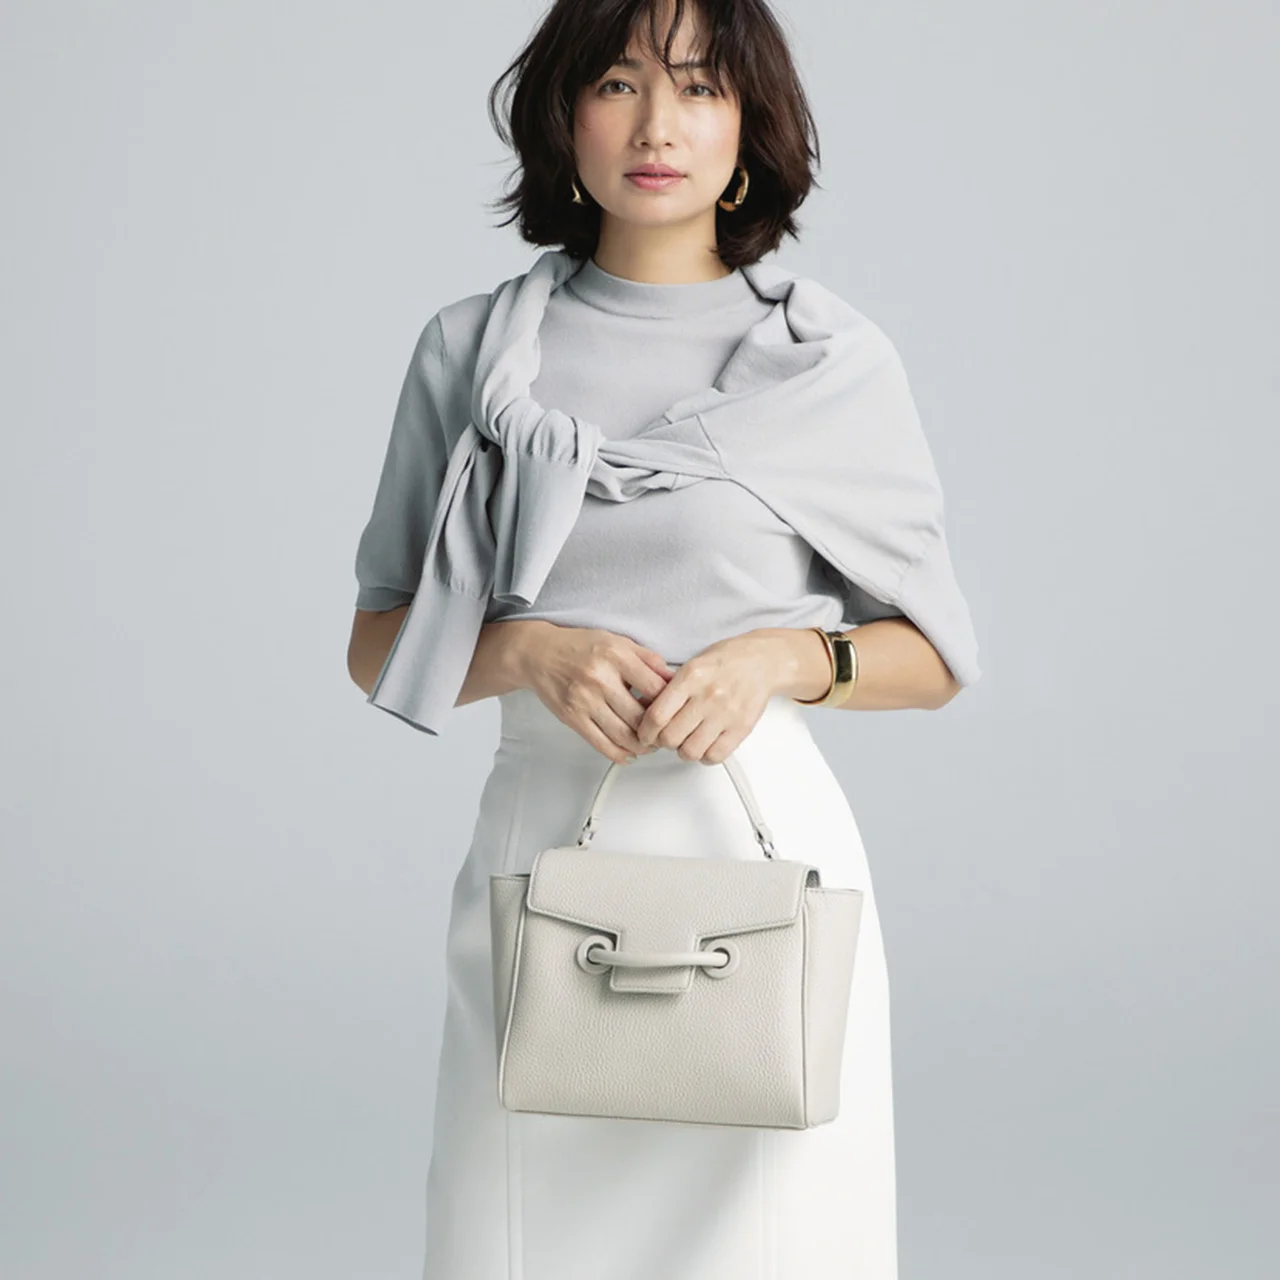 四角いバッグを持つモデルの佐田真由美さん